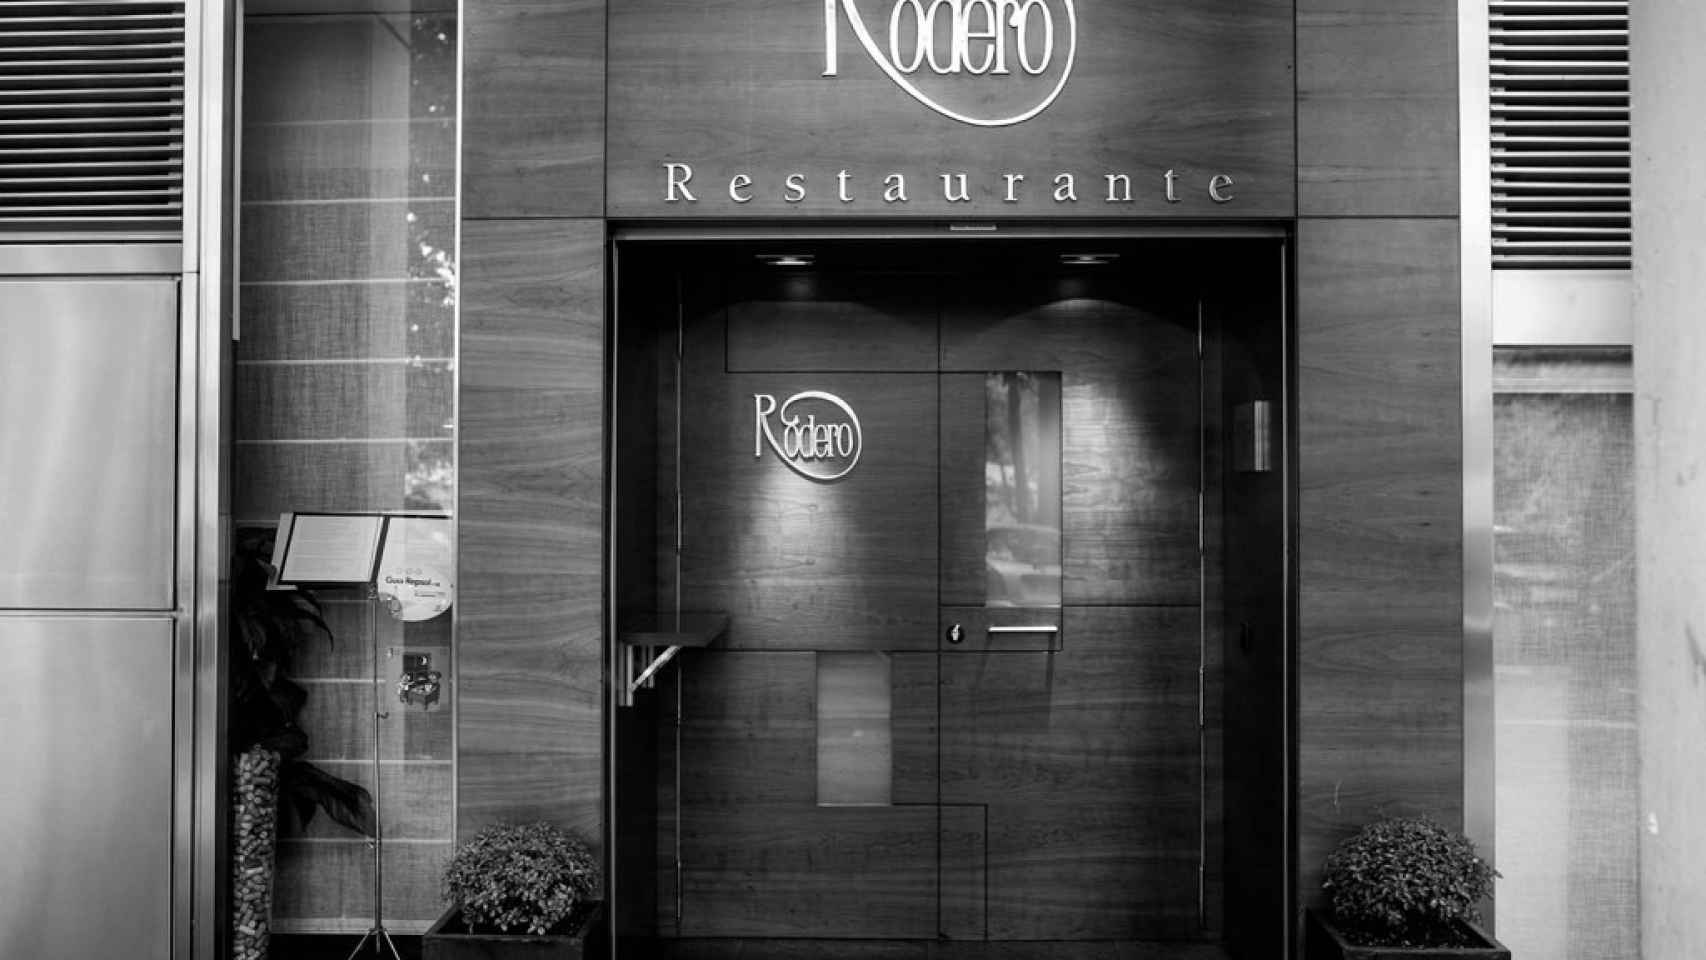 Rodero Restaurante.